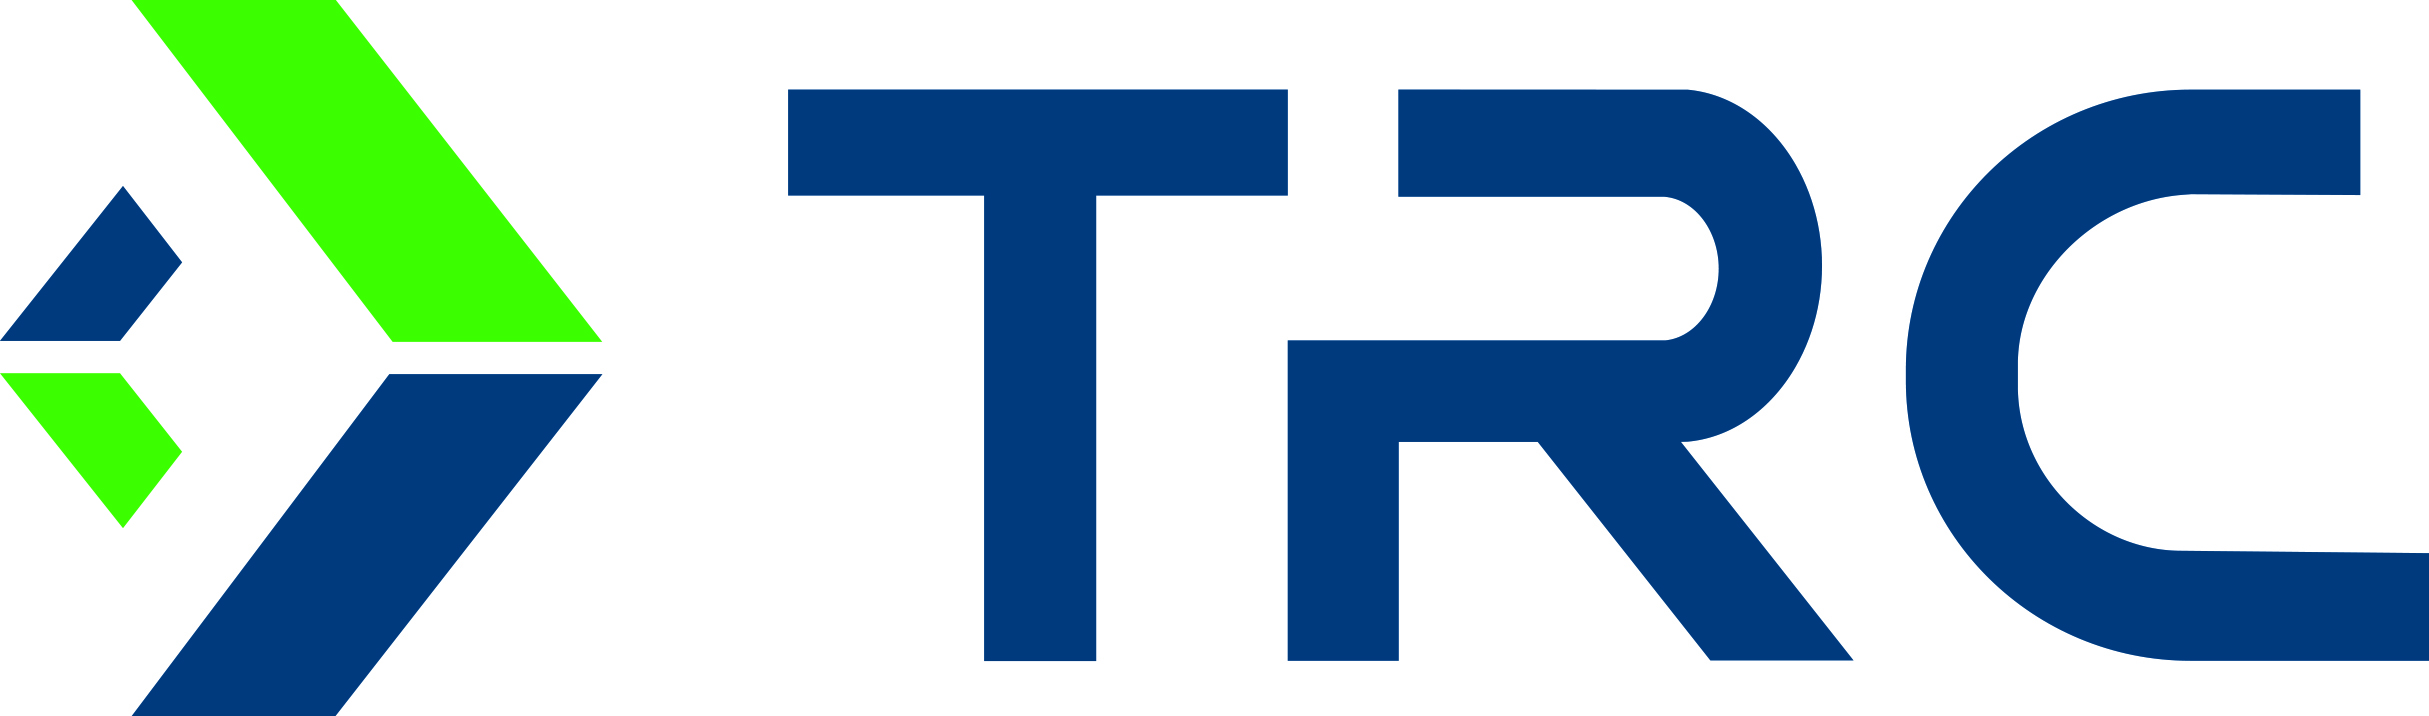 trc logo